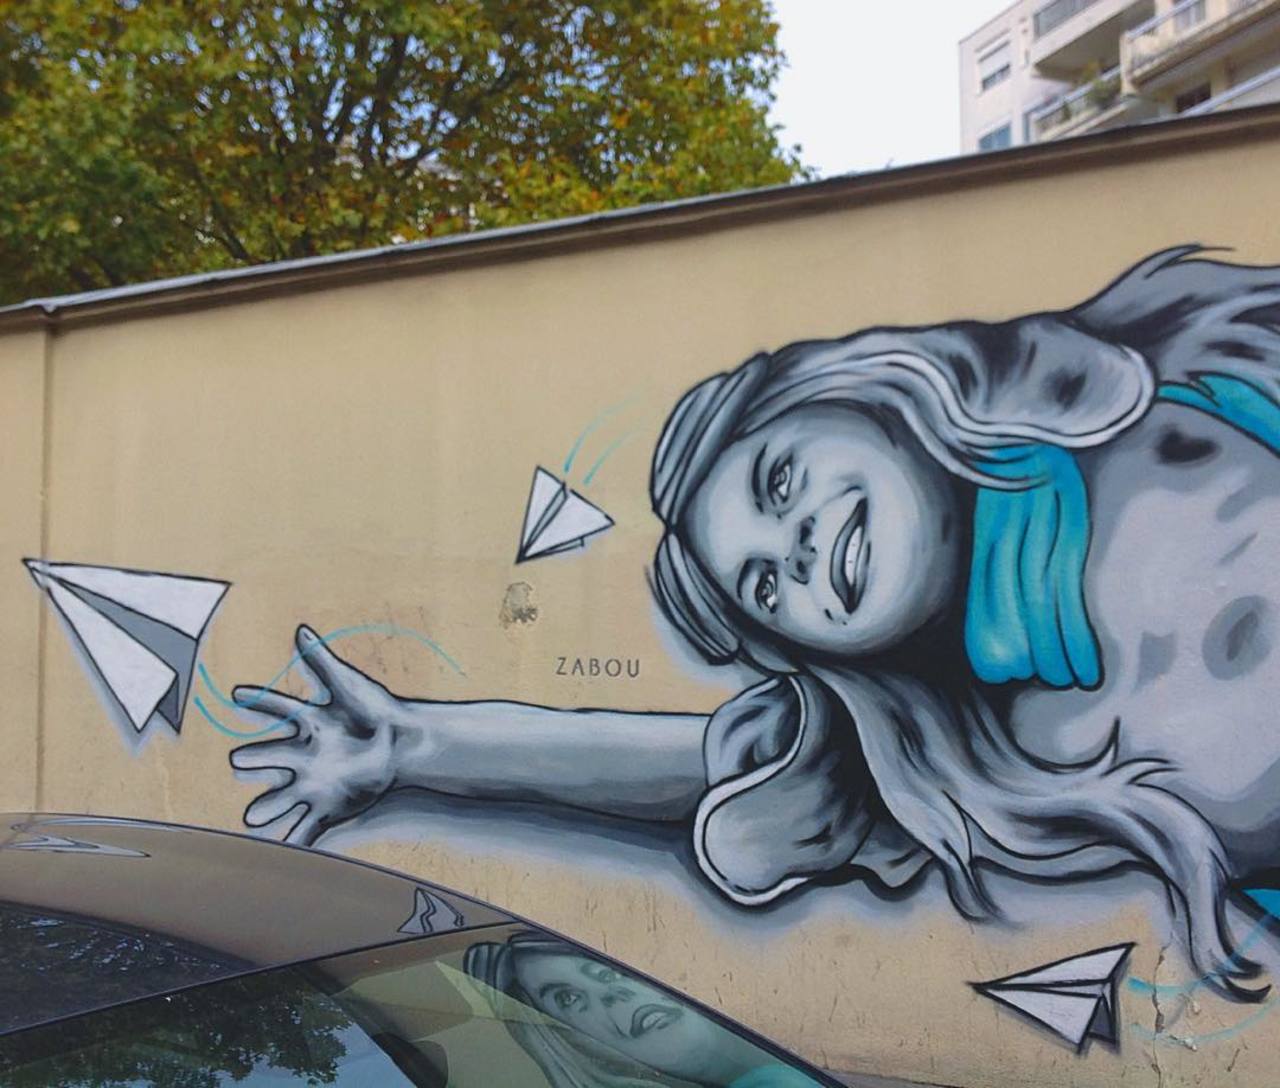 http://ift.tt/1KiqpQt #Paris #graffiti photo by stefetlinda http://ift.tt/1Kgbse9 #StreetArt http://t.co/wCuXoIyvgM